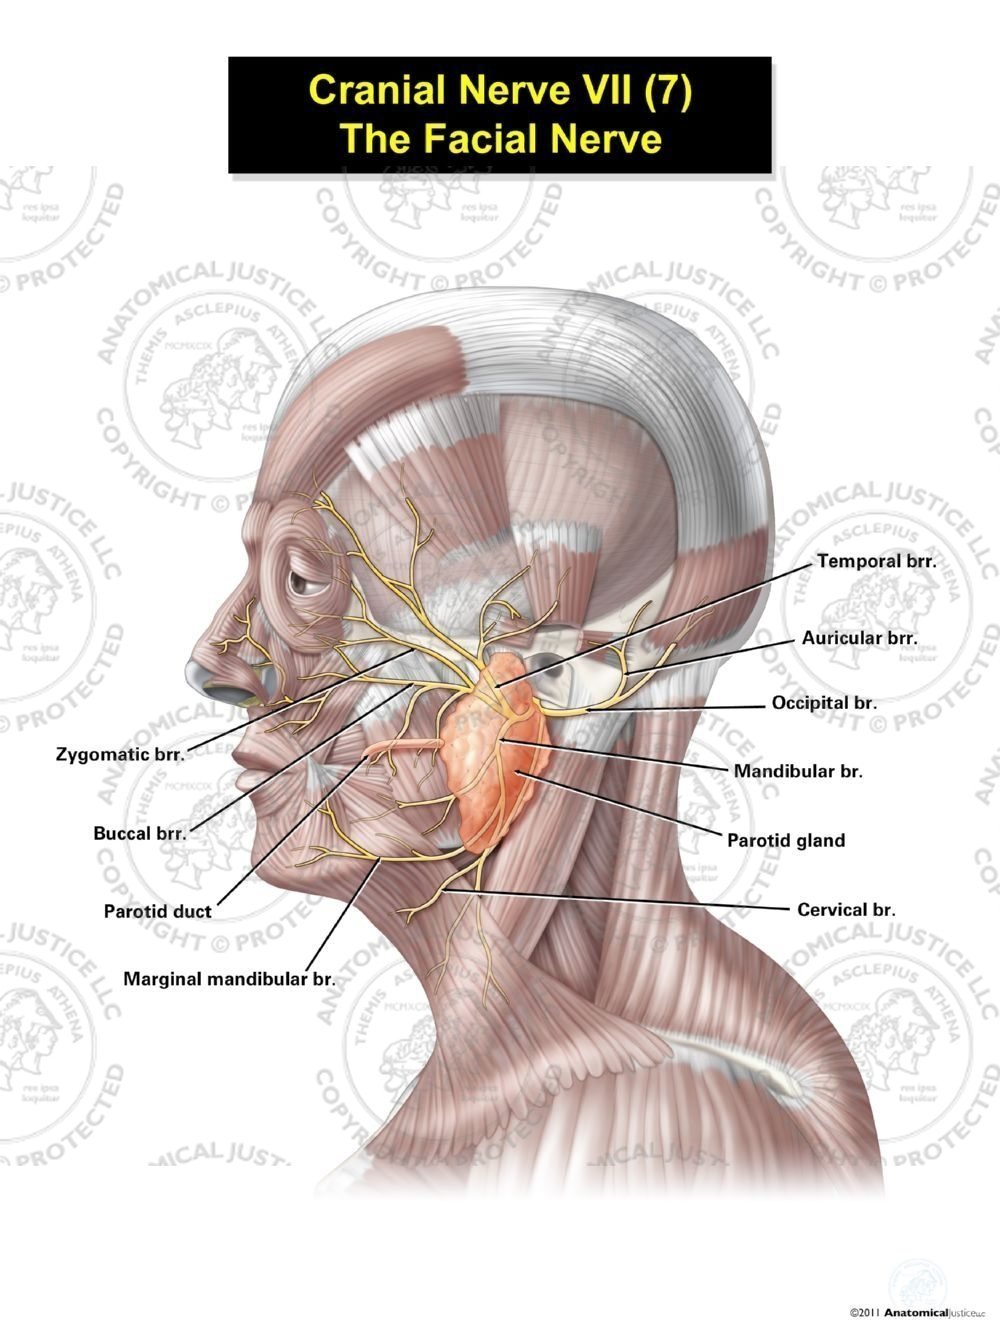 Cranial Nerve VII (7) – The Facial Nerve